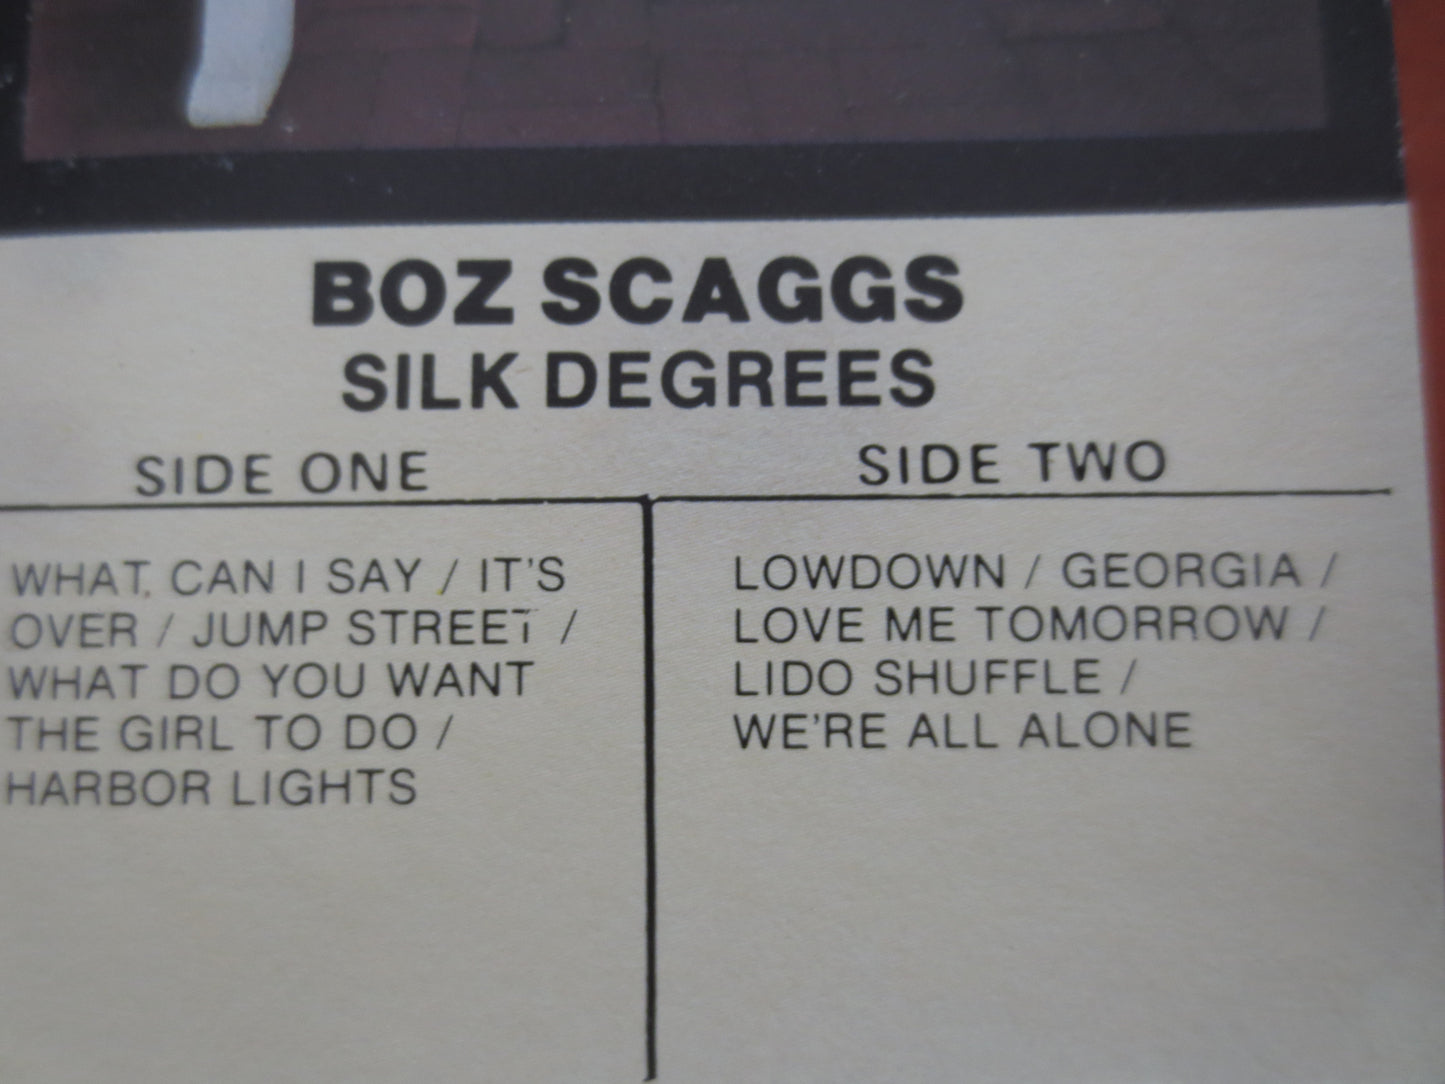 BOZ SCAGGS, SILK Degrees Album, Rock Tape, Boz Scaggs Lp, Tape Cassette, Boz Scaggs Cassette, Rock Cassette, 1976 Cassette